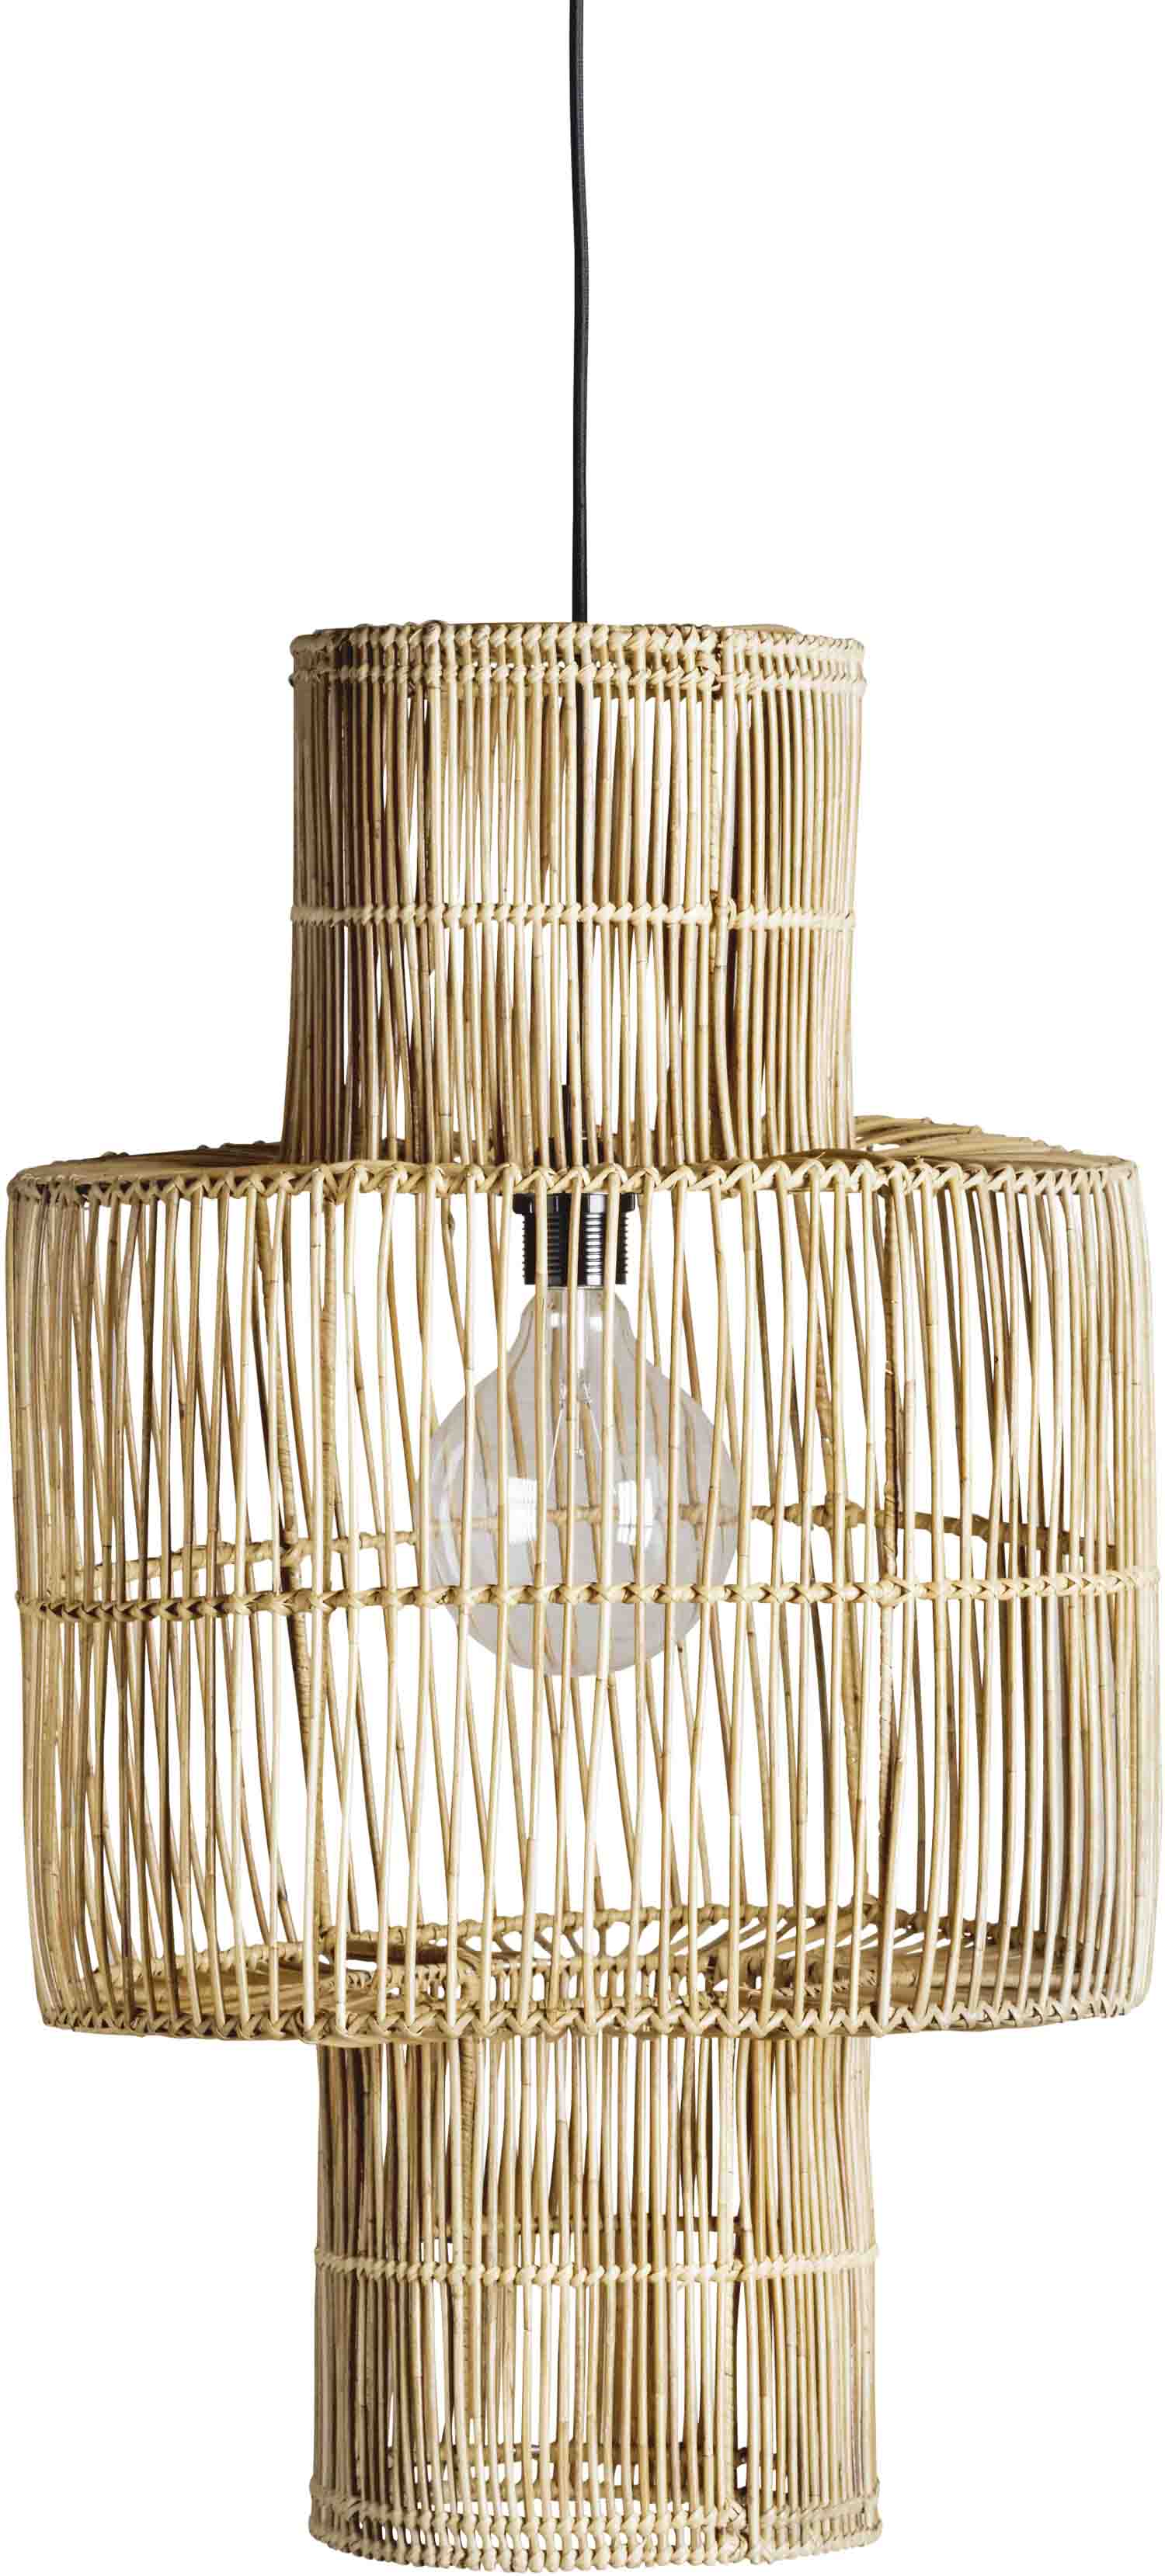 Flad narre Arashigaoka 13 smukke lamper i naturmaterialer. Se de fine lamper her - ALT.dk